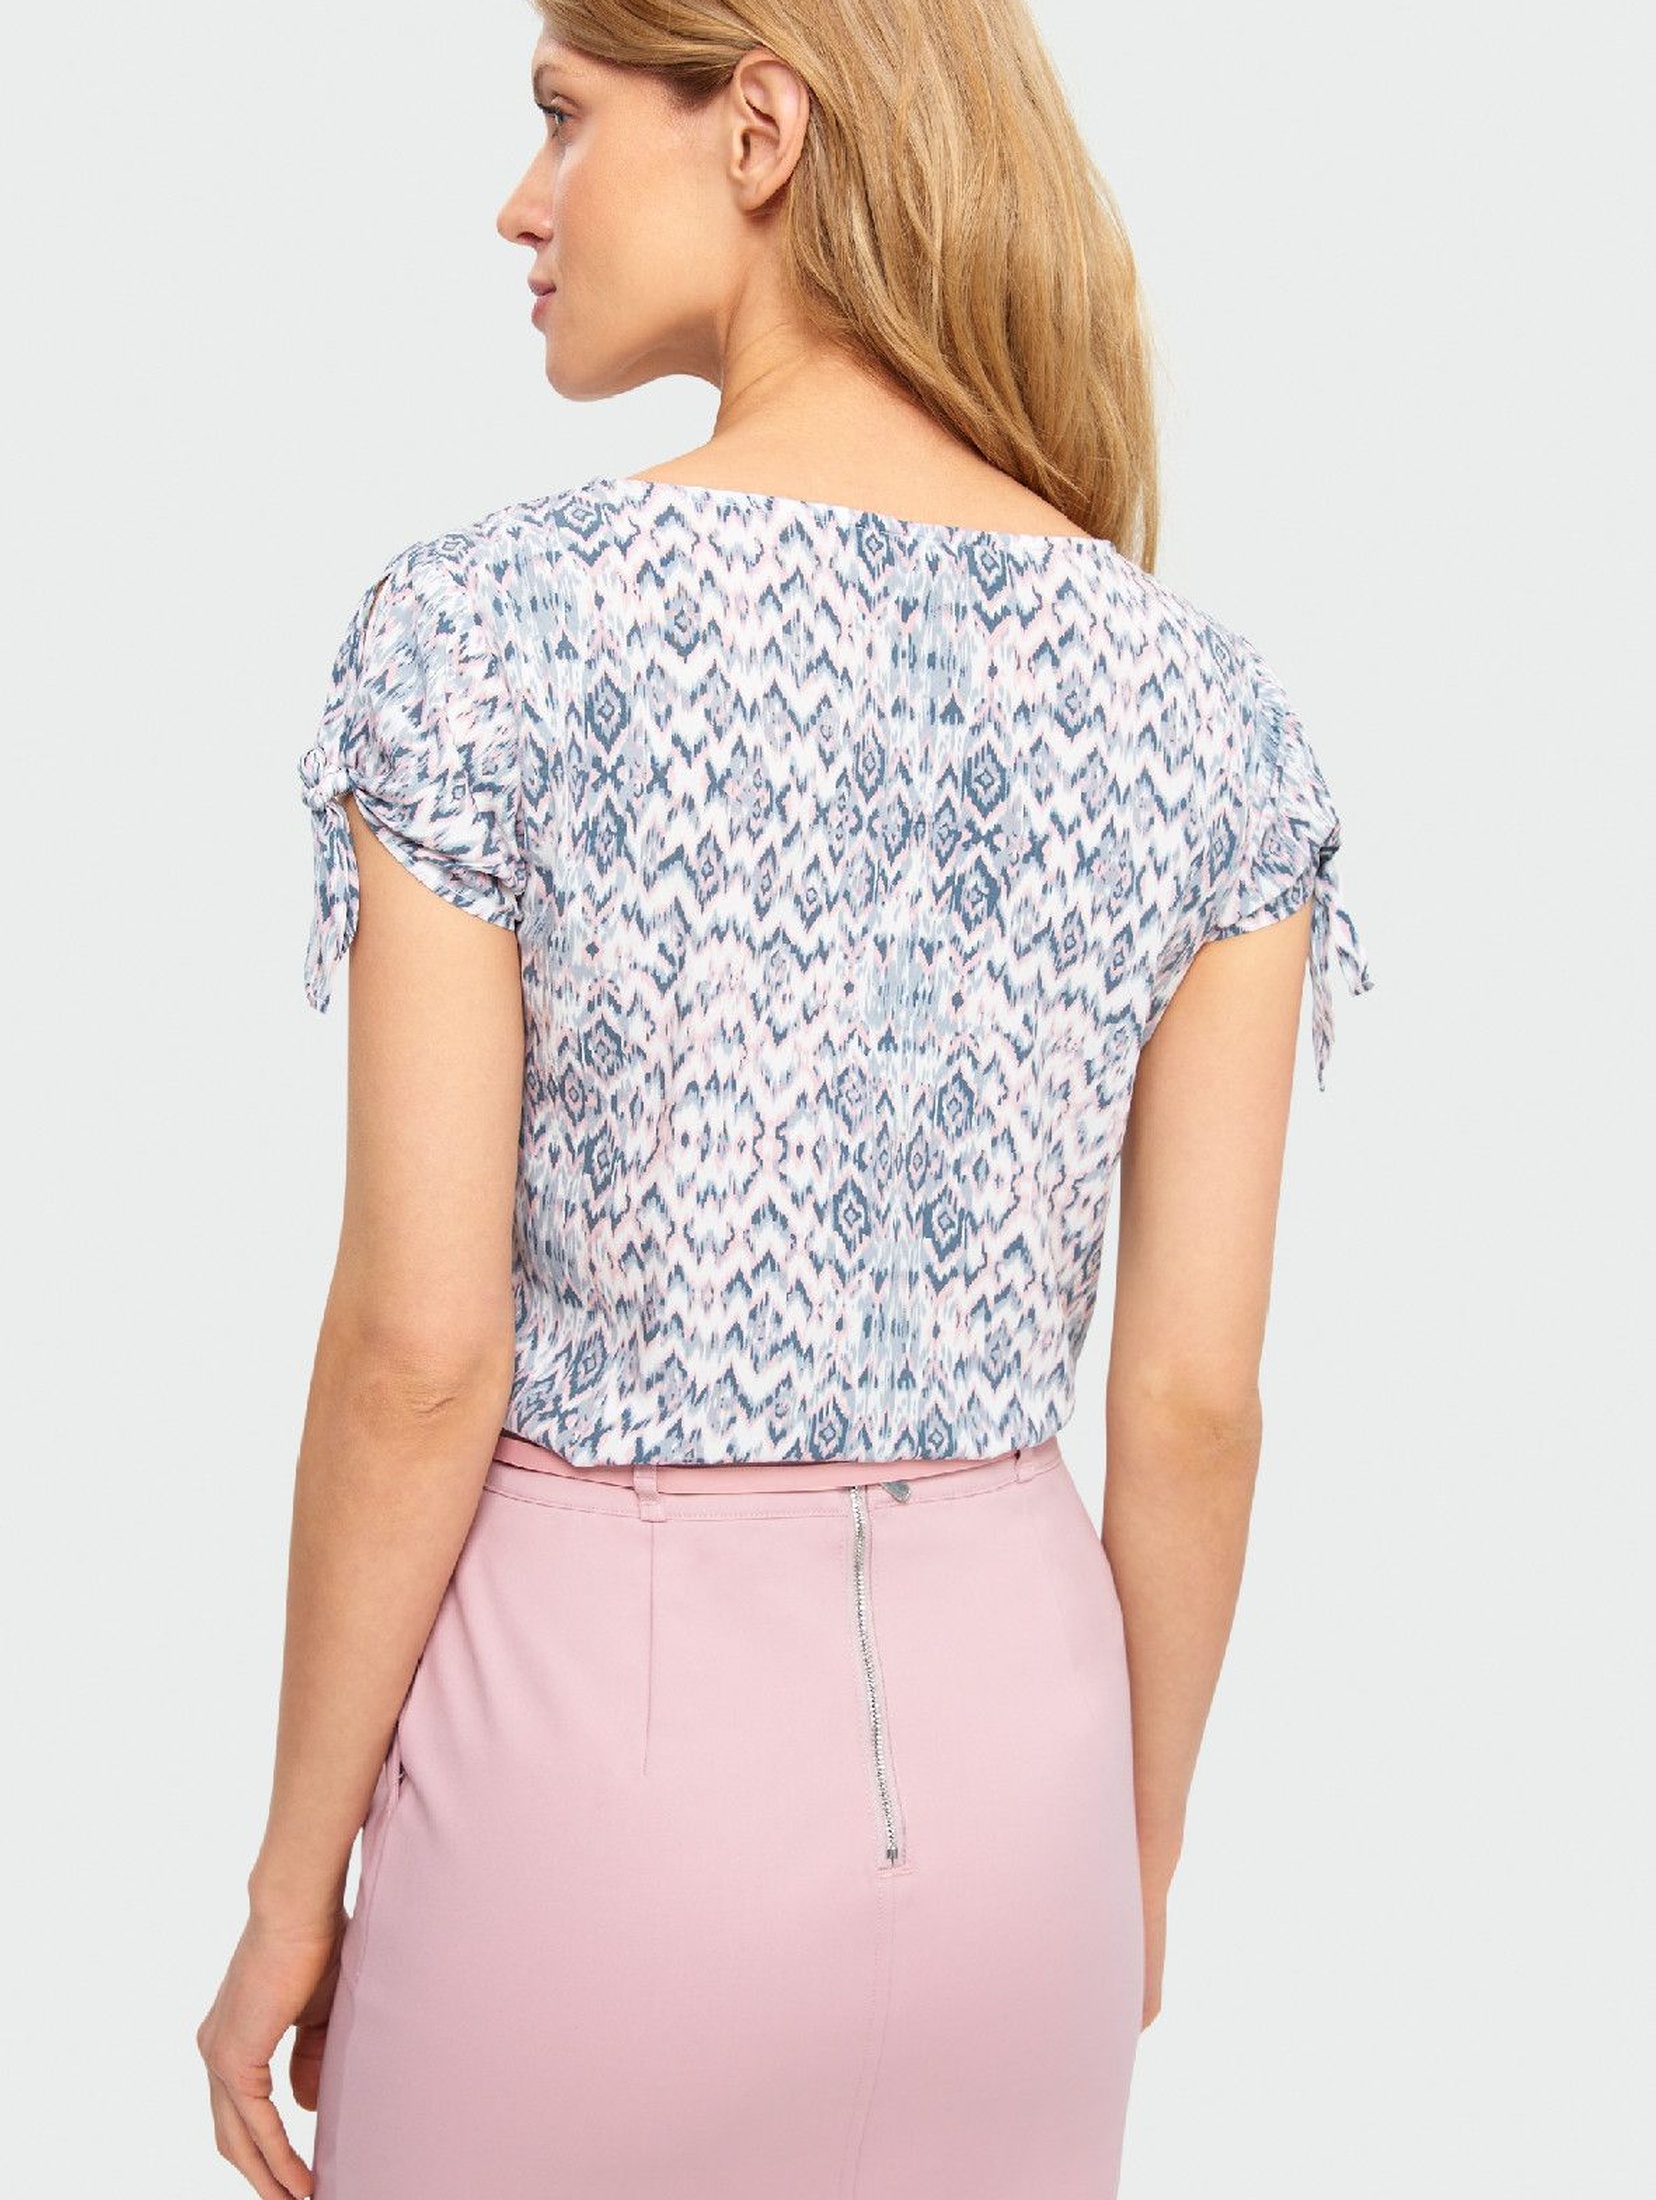 Wiskozowa bluzka damska z ozdobnym wiązaniem na rękawie- pastelowe kolory